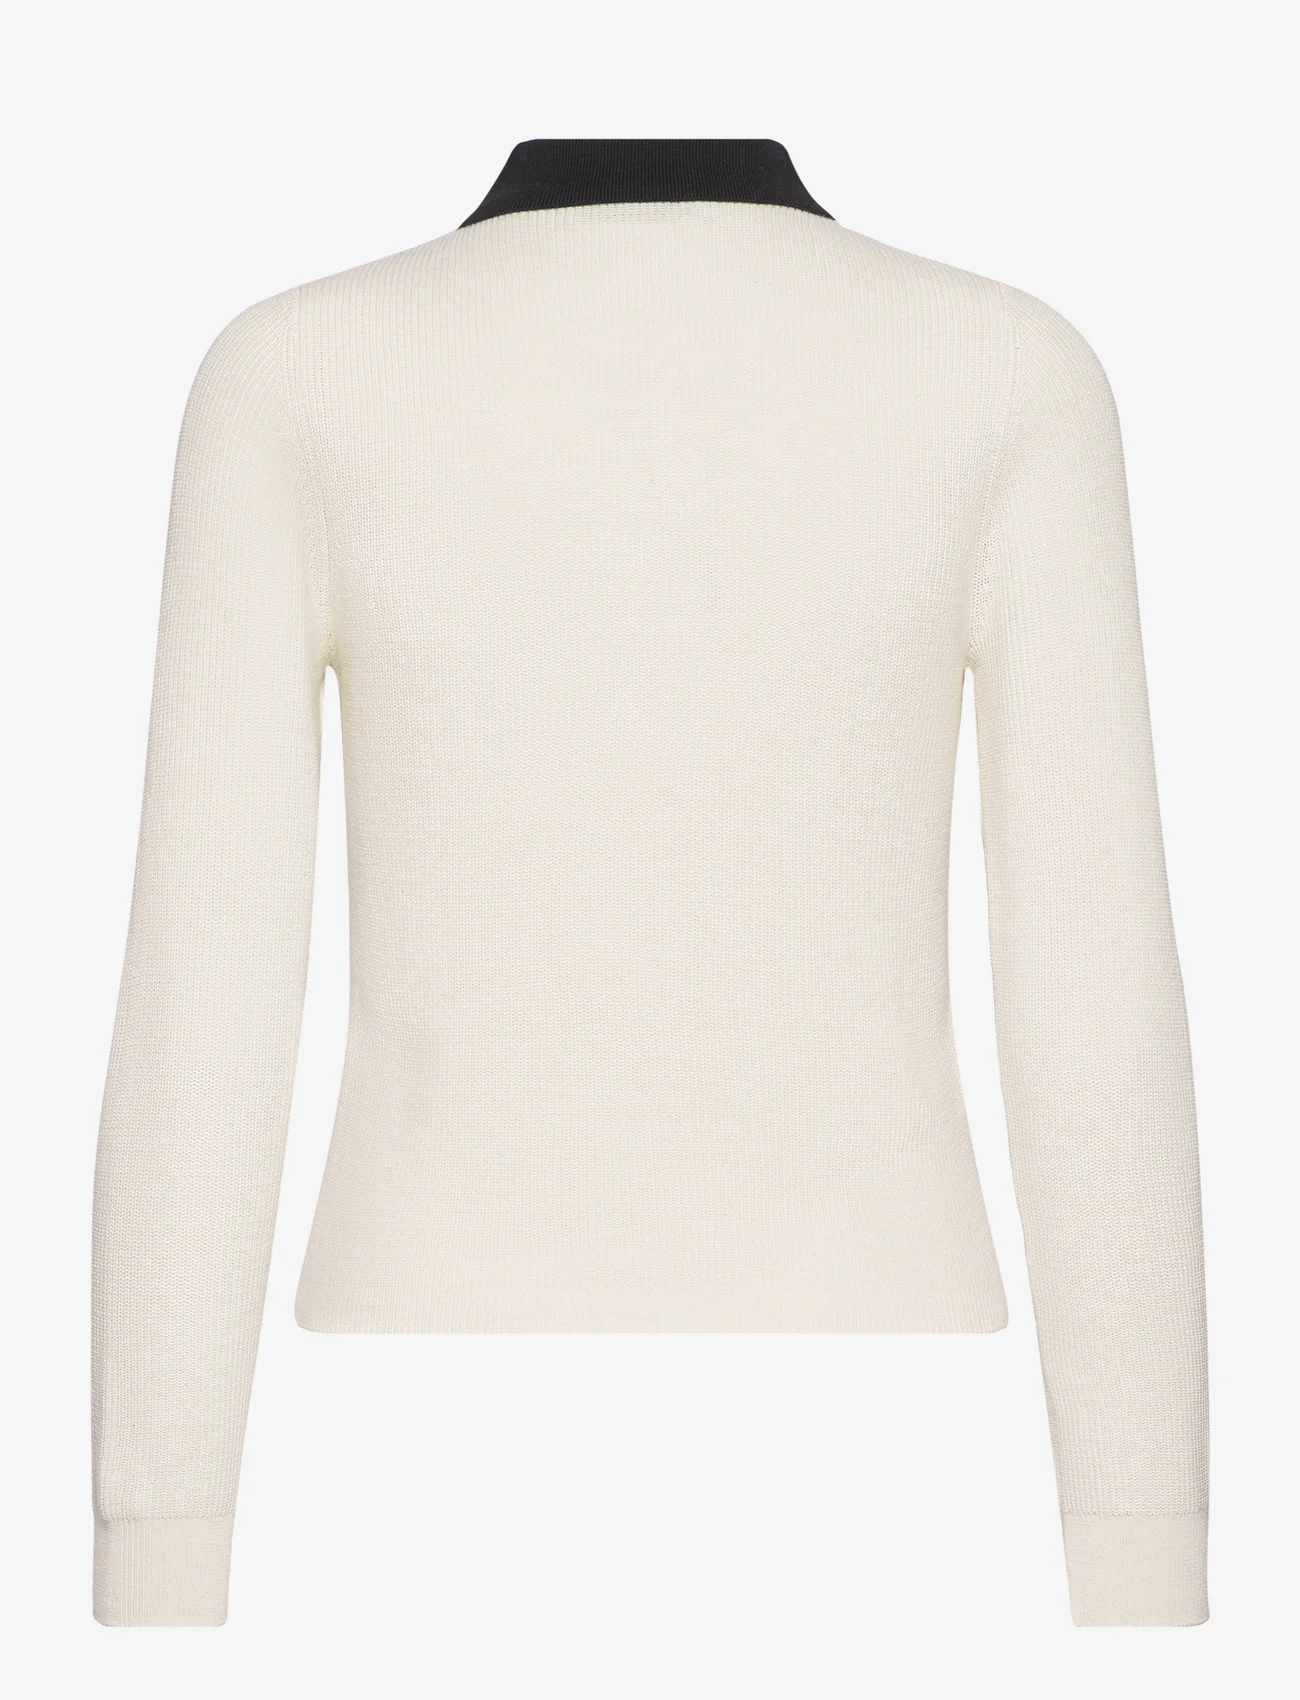 Mango - Knitted polo neck sweater - poloskjorter - light beige - 1